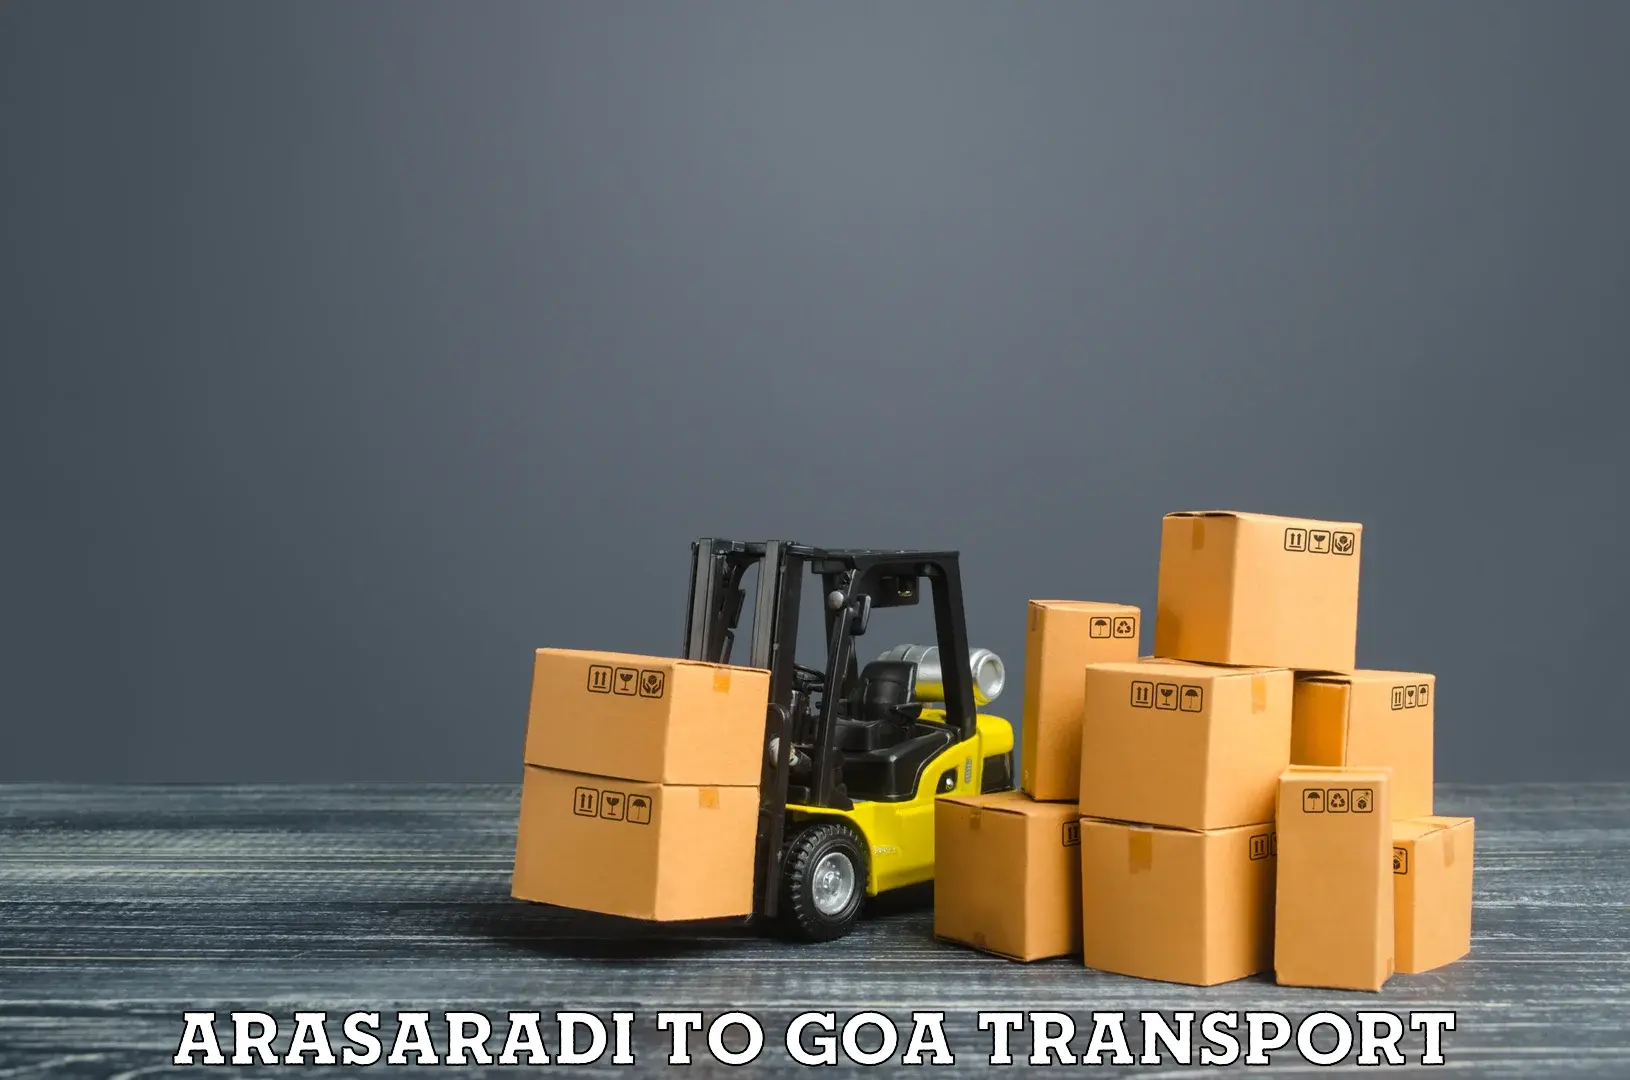 Interstate goods transport in Arasaradi to Vasco da Gama